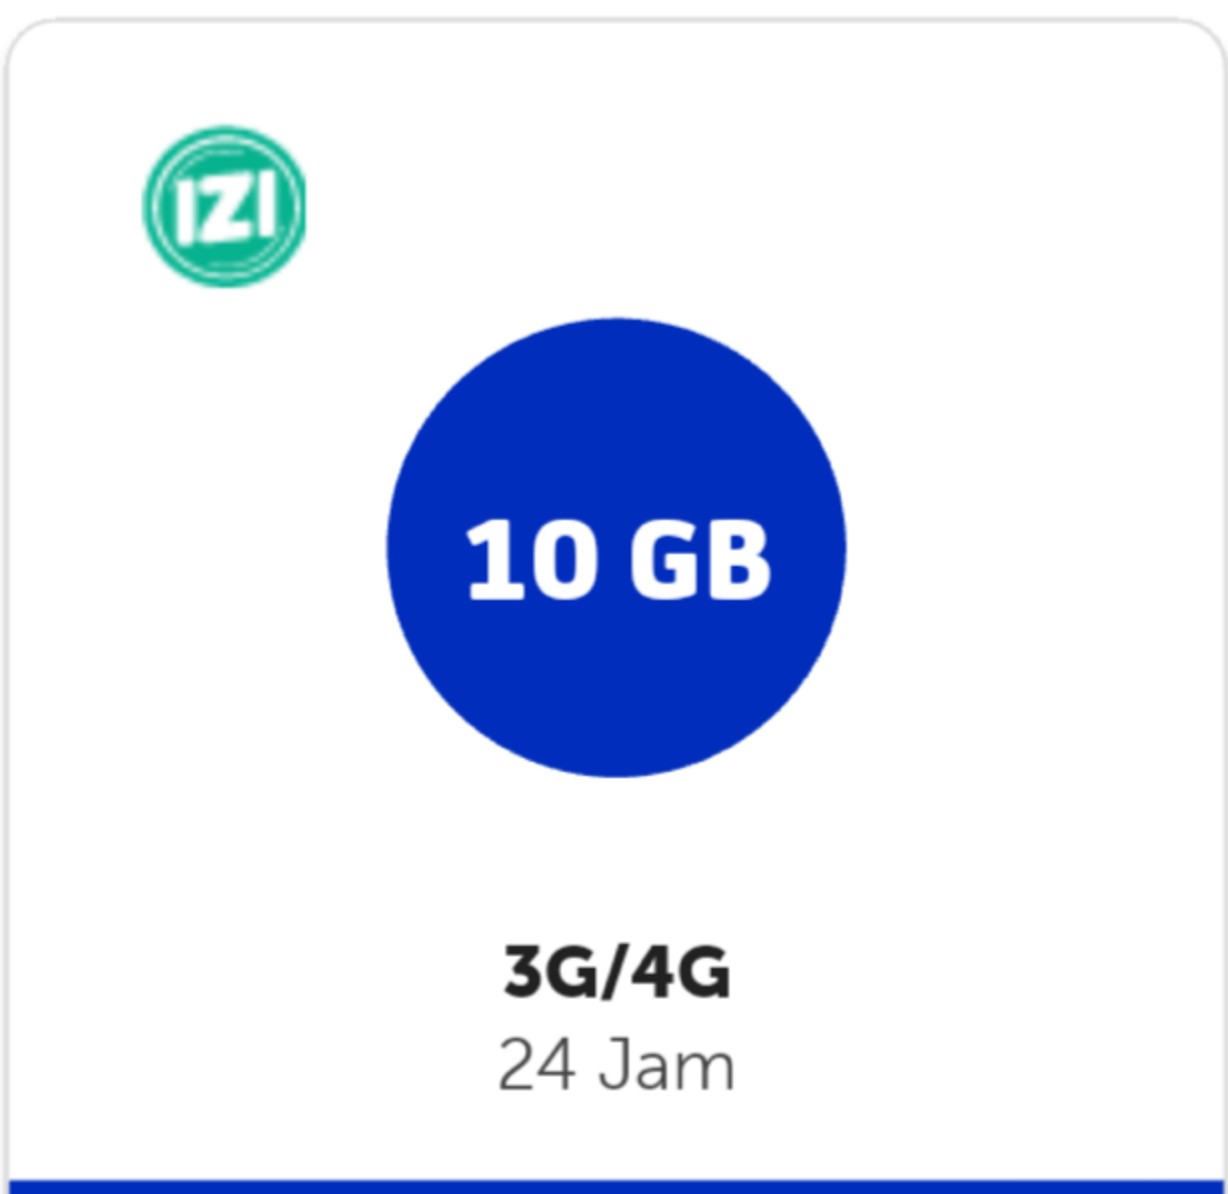 Kuota XL XL GO IZI Mifi Modem - XL GO IZI 10 GB